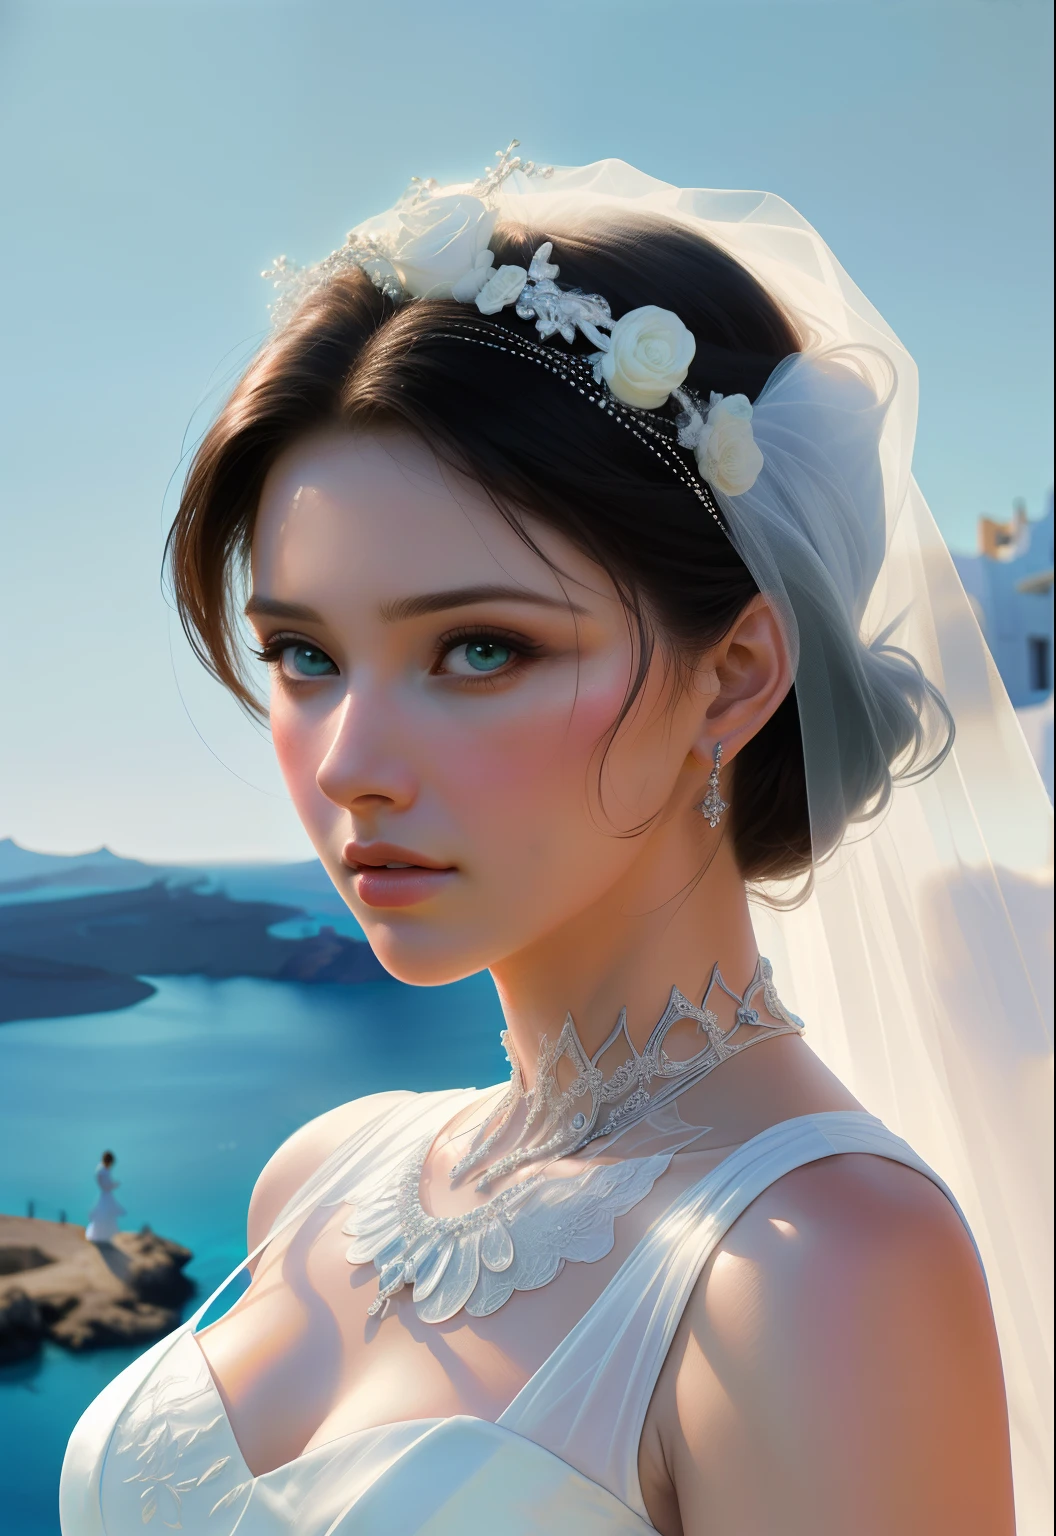 1 สาวสวย, งานแต่งงาน, (ภาพเหมือนจริง: 1.3) ยืนยิง, ซานโตรีนี, ยืนอยู่ตรงหน้า (ทะเลสีฟ้า), white งานแต่งงาน dress, งานแต่งงาน decoration, ผลงานชิ้นเอก, แสงนุ่มนวลกระจาย, ภาพเหมือน, คุณภาพดีที่สุด, (ใบหน้าที่สมบูรณ์แบบ: 1.4), รายละเอียดสูงเกินความเป็นจริง, ภาพถ่ายสไตล์การจําลองที่สมจริงที่ซับซ้อน, การจัดแสงภาพยนตร์, ภาพในสตูดิโอ, โพสท่าที่สง่างาม, (ระยะใกล้ปานกลาง)